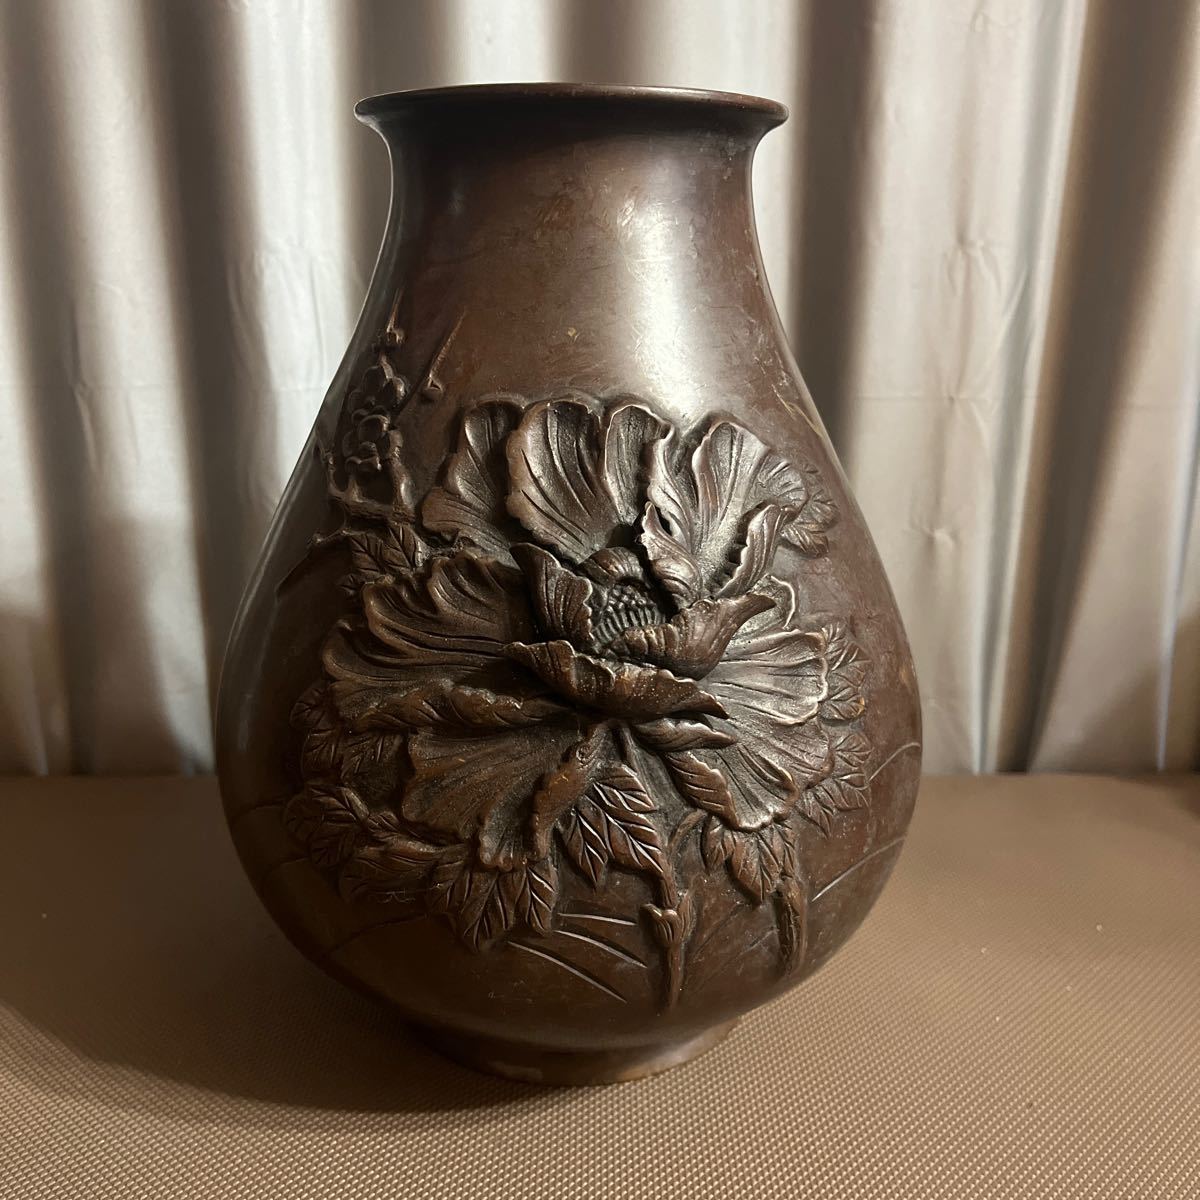 Yahoo!オークション -「花瓶」(花器) (銅製)の落札相場・落札価格